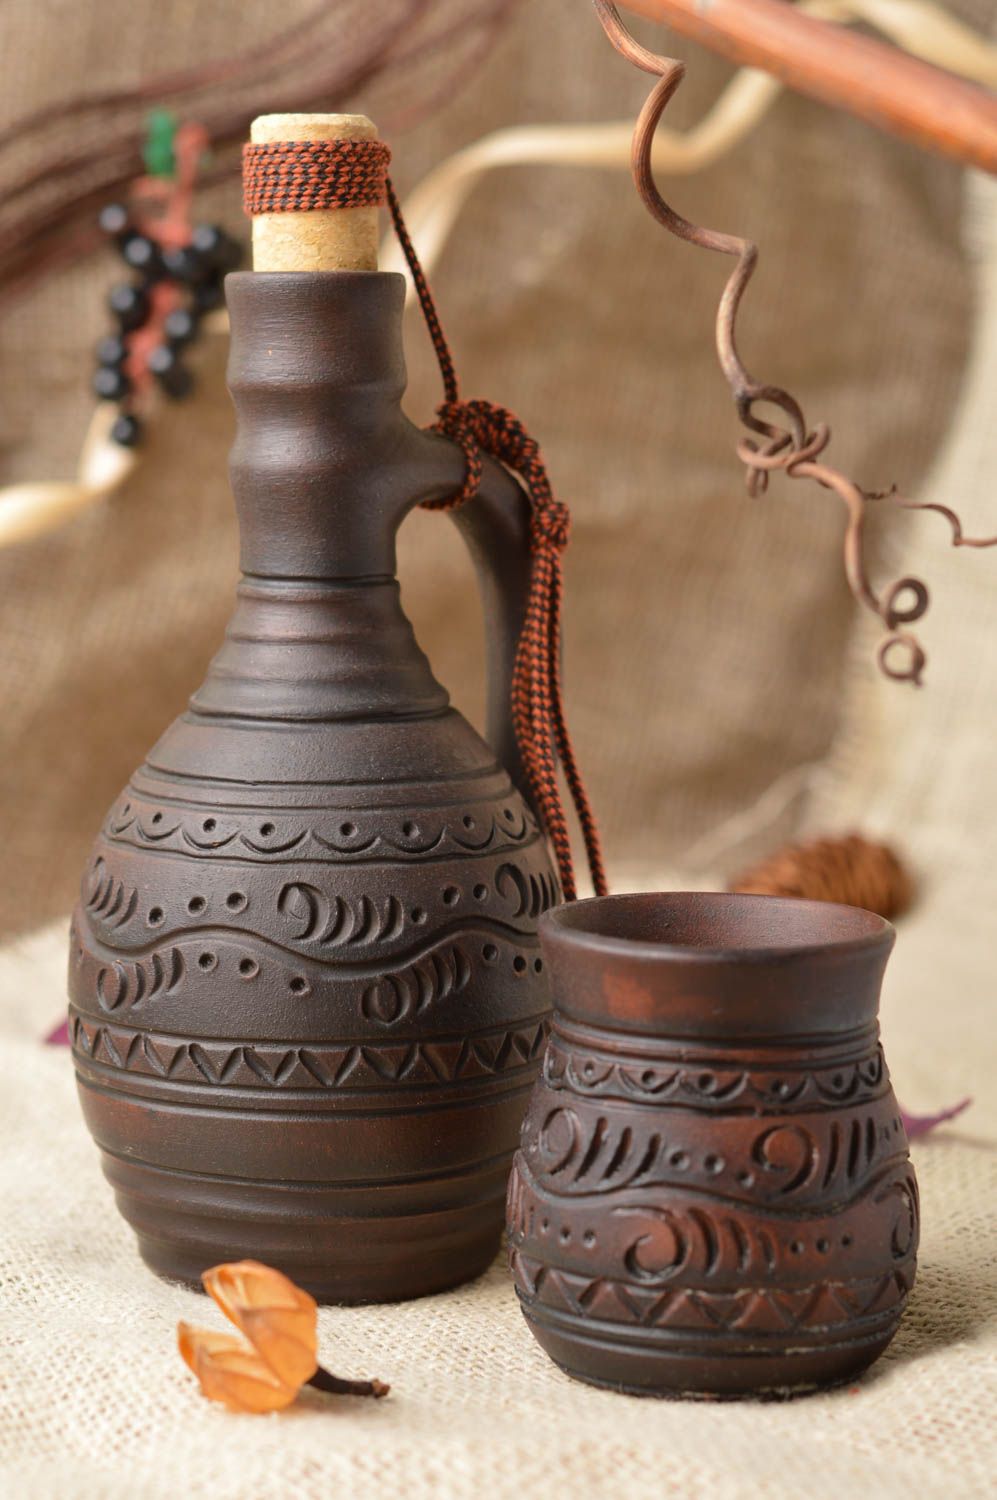 Juego de vajilla cerámica vaso y botella artesanales de color marrón   foto 1